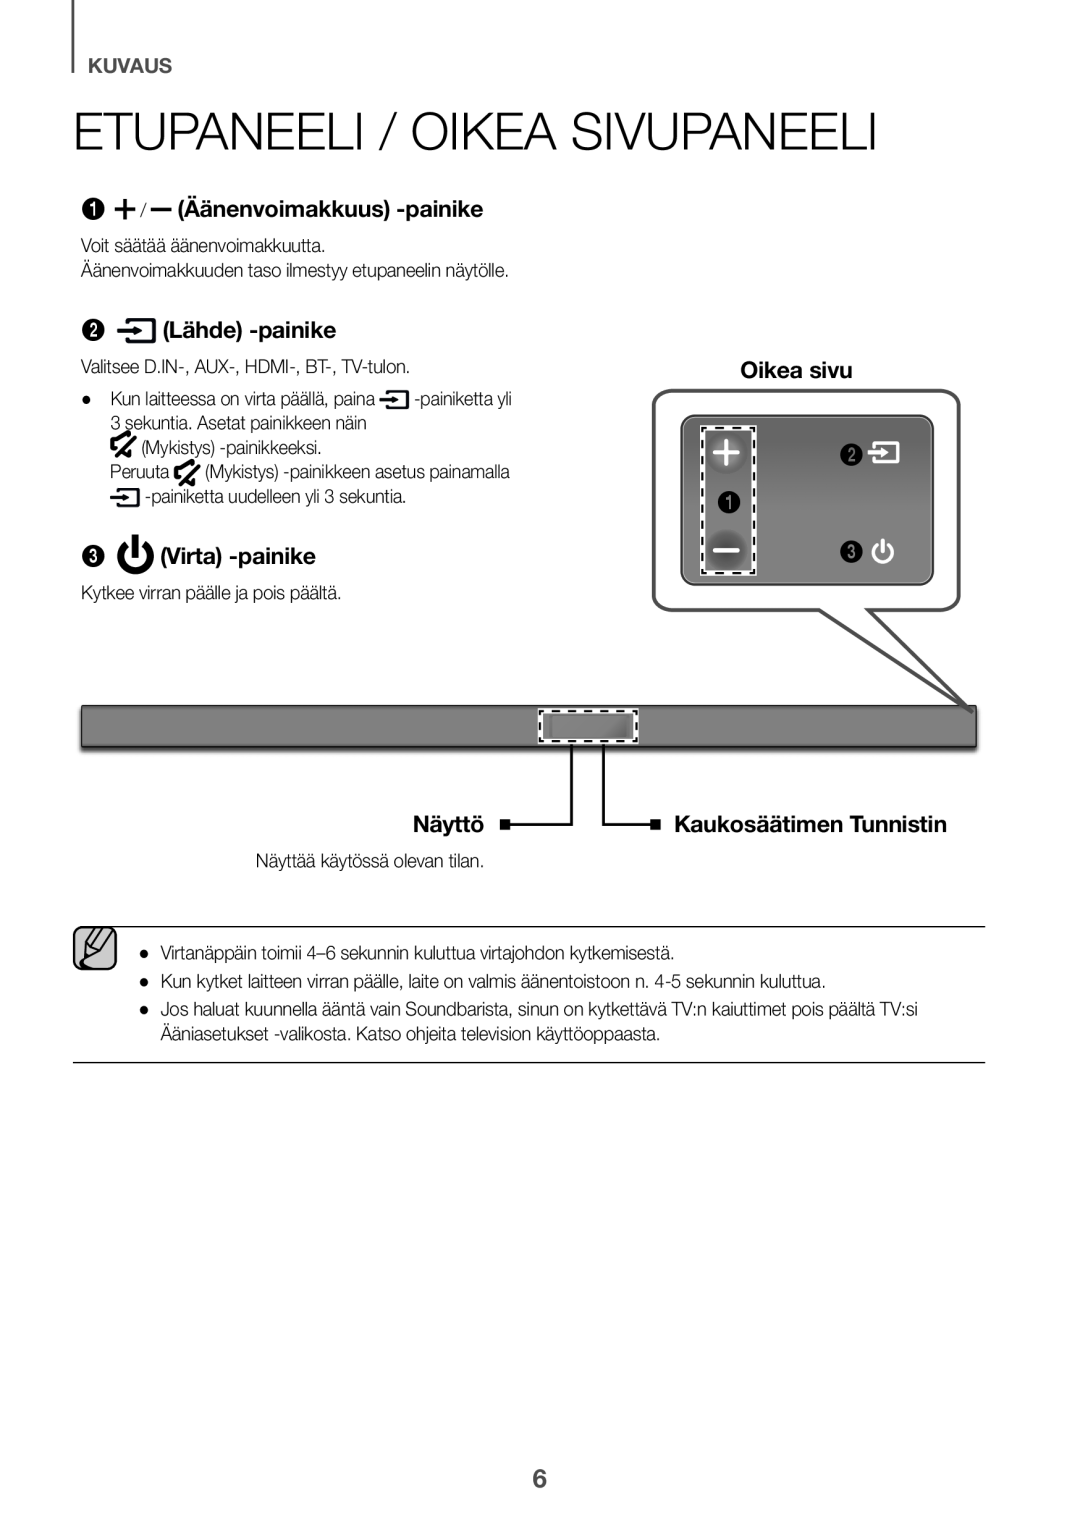 Samsung HW-K660/XE Etupaneeli / oikea sivupaneeli, 1 / Äänenvoimakkuus -painike, 2 Lähde -painike, Virta -painike, Näyttö 